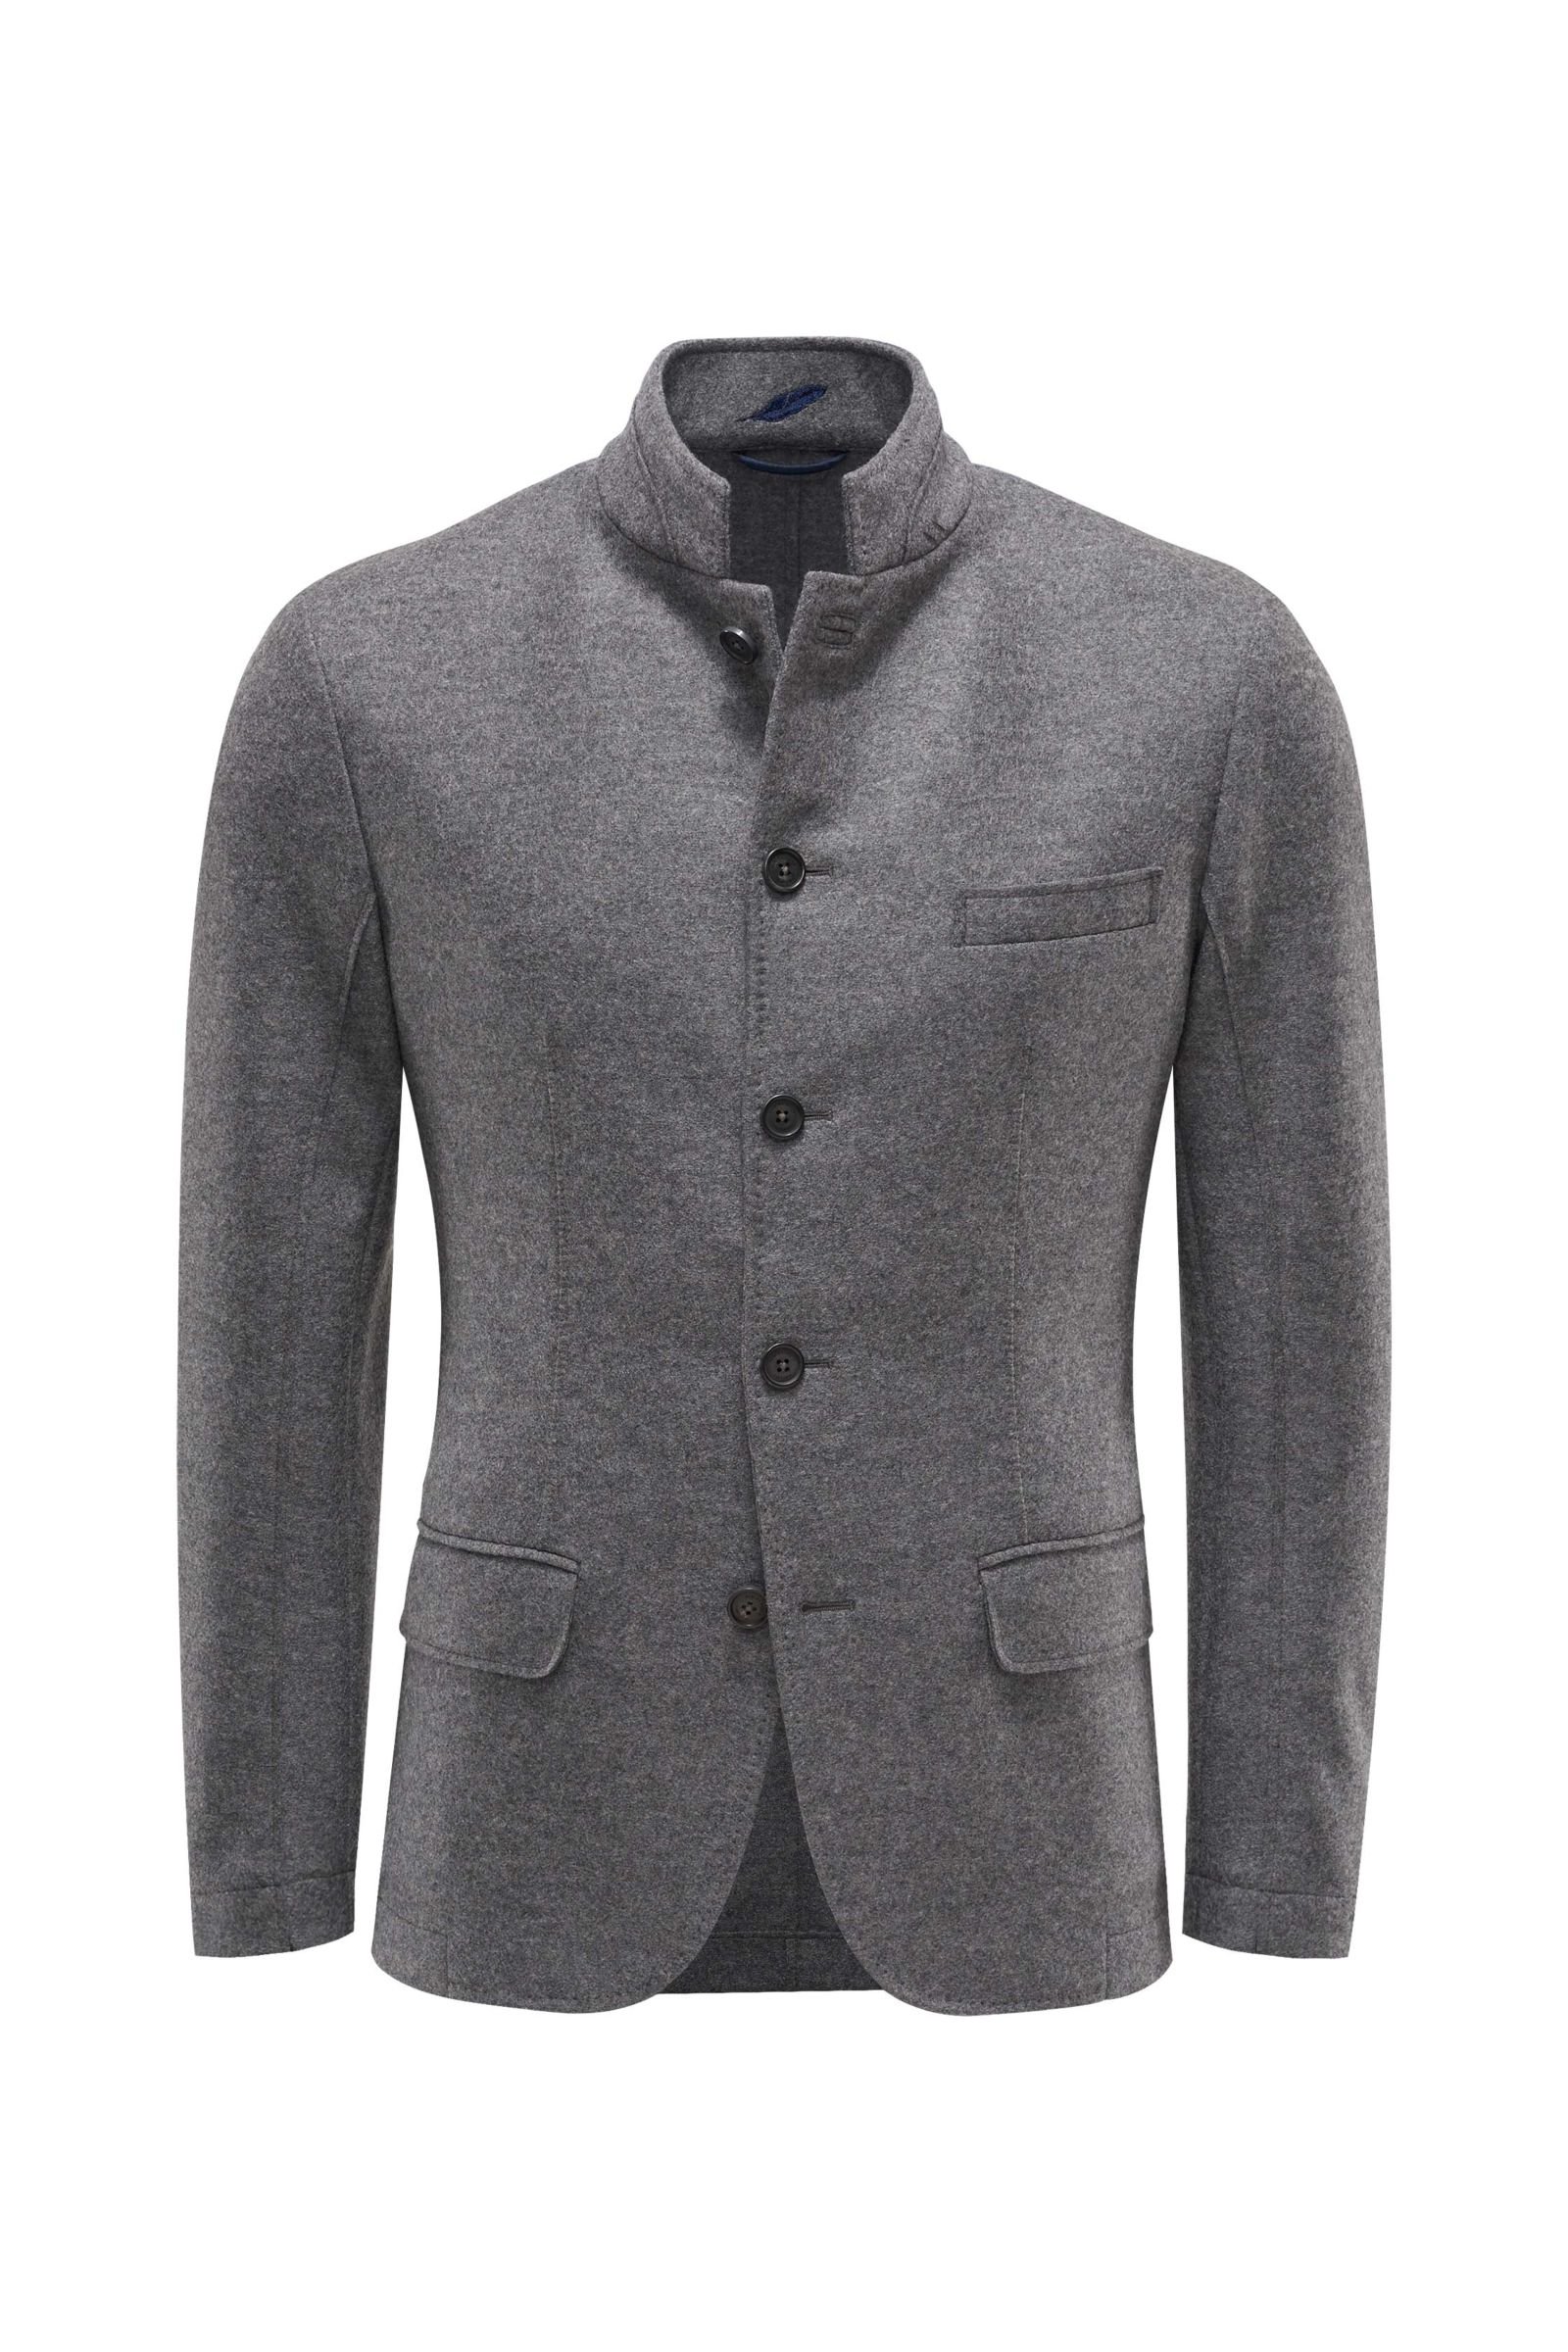 Loden jacket grey